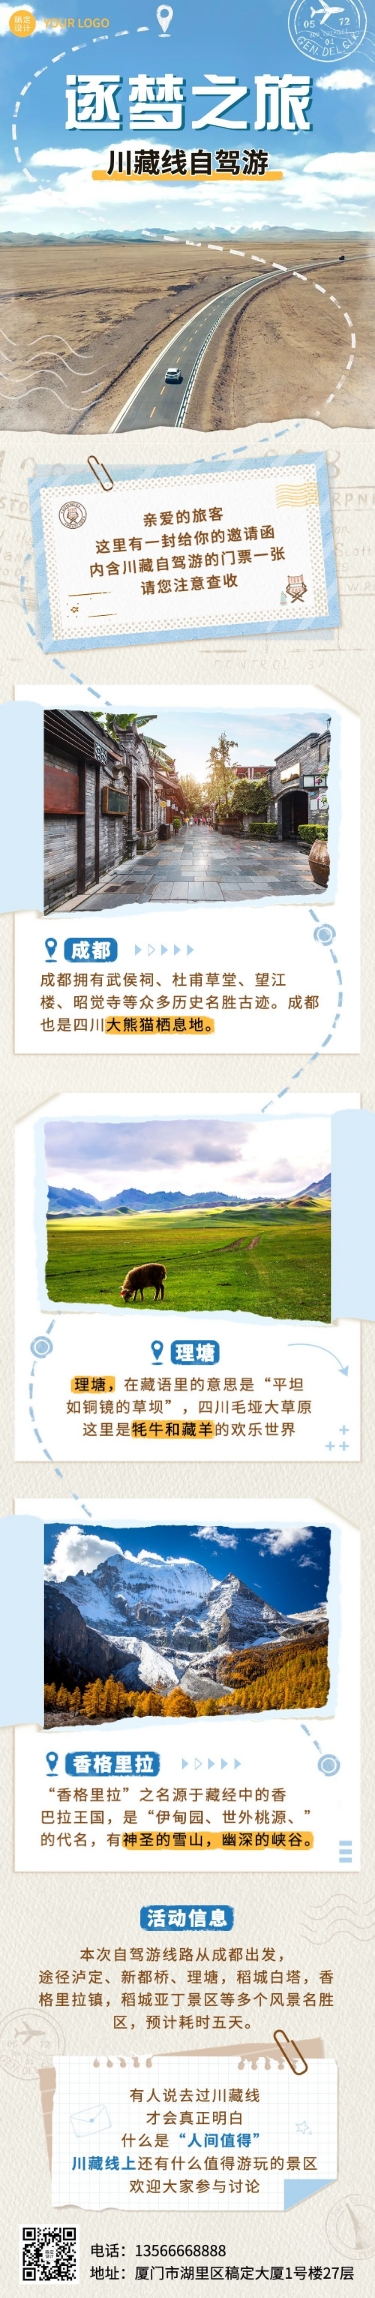 旅游出行川藏线系列之旅清新风文章长图